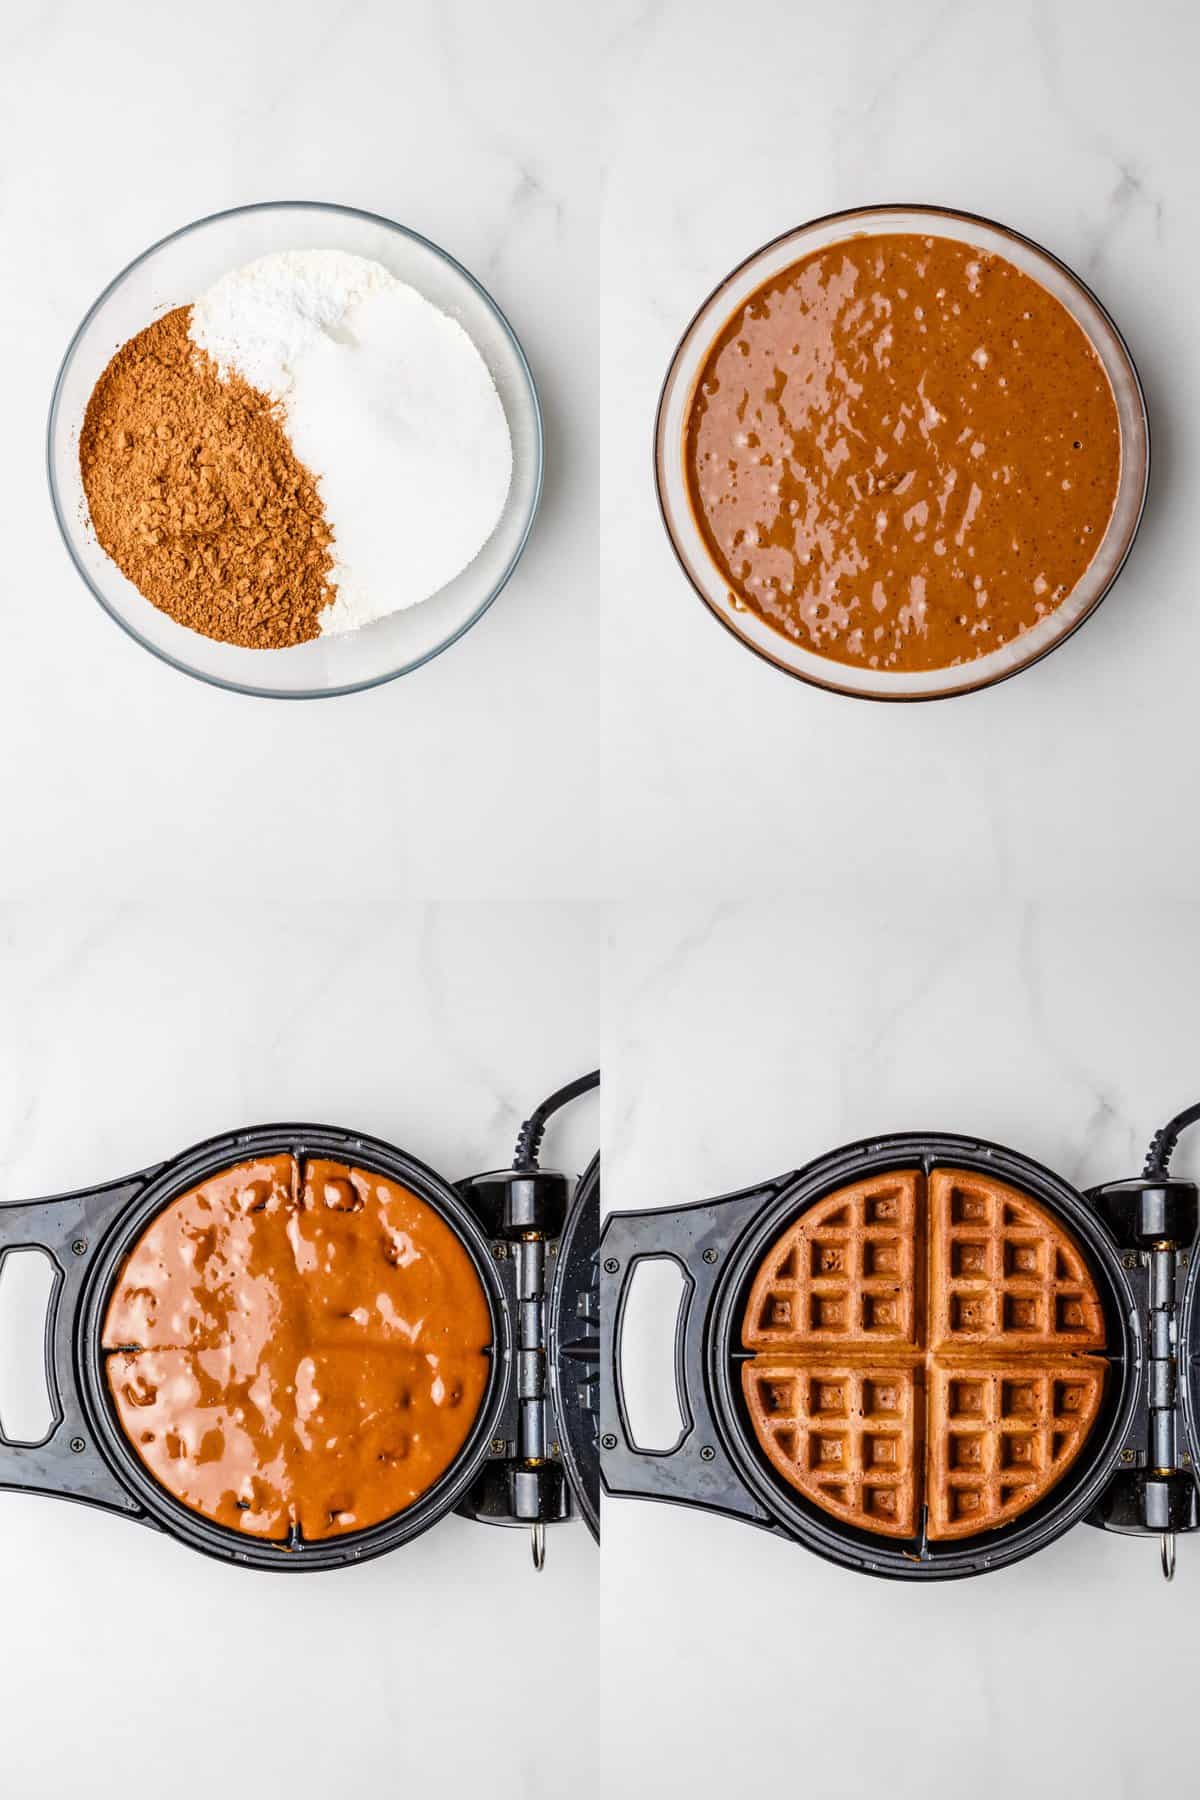 steps to make chocolate waffles